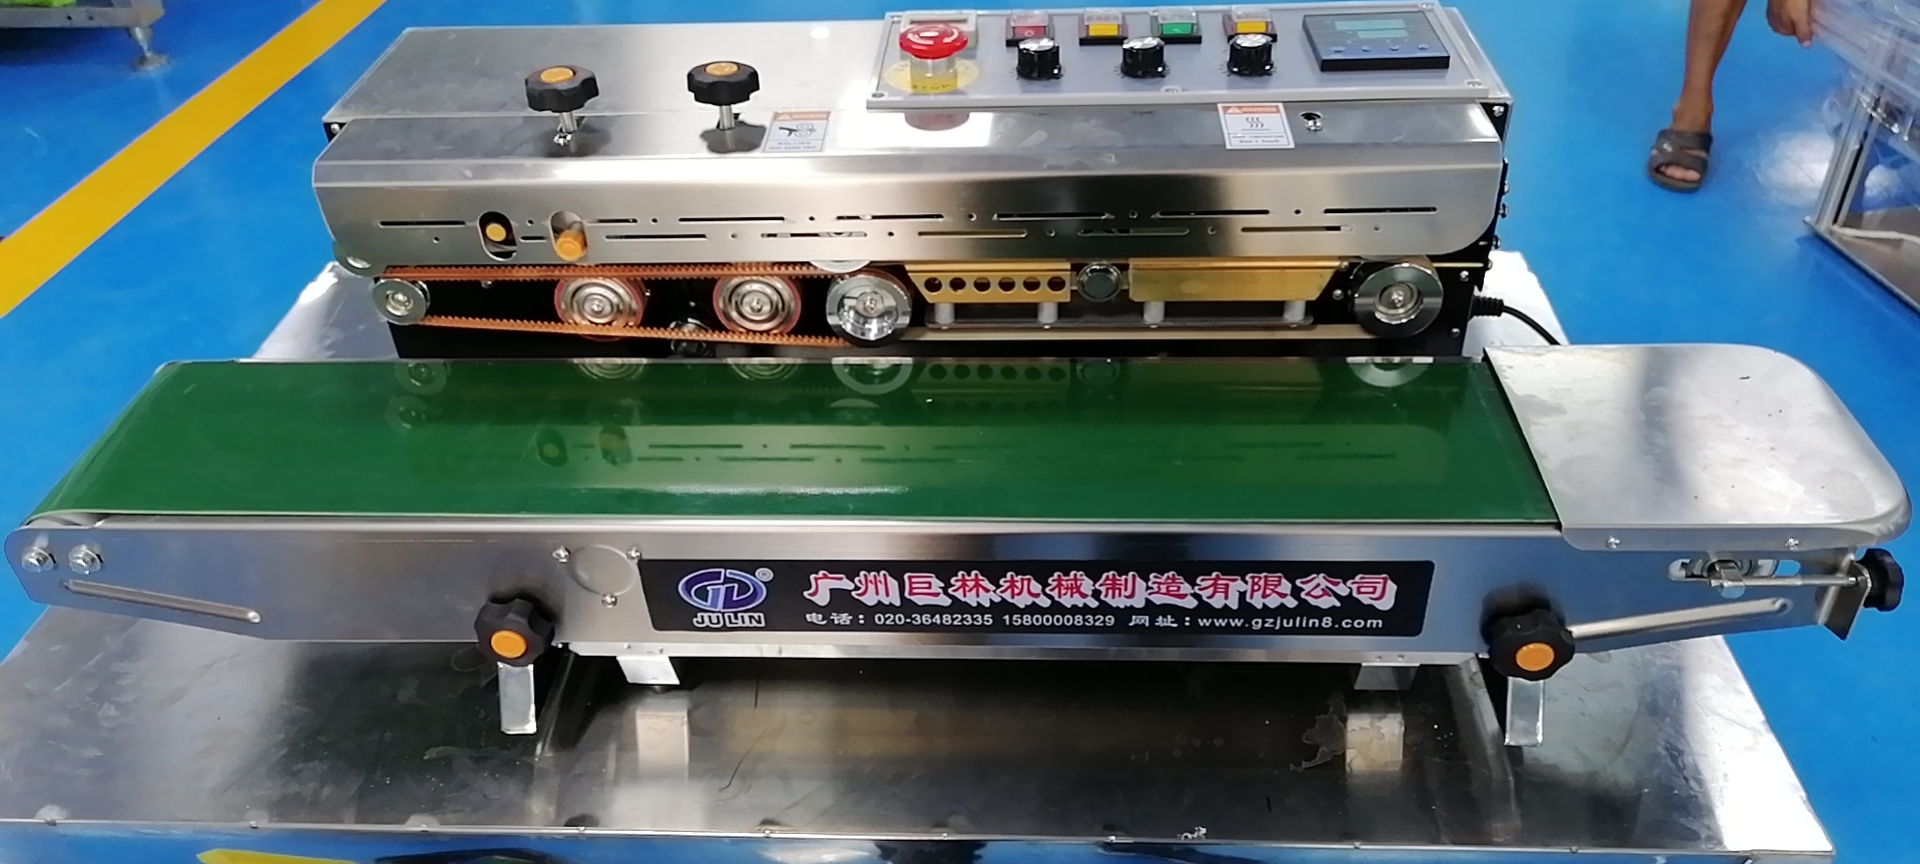 TRD-1000不锈钢自动薄膜油墨打码封口机